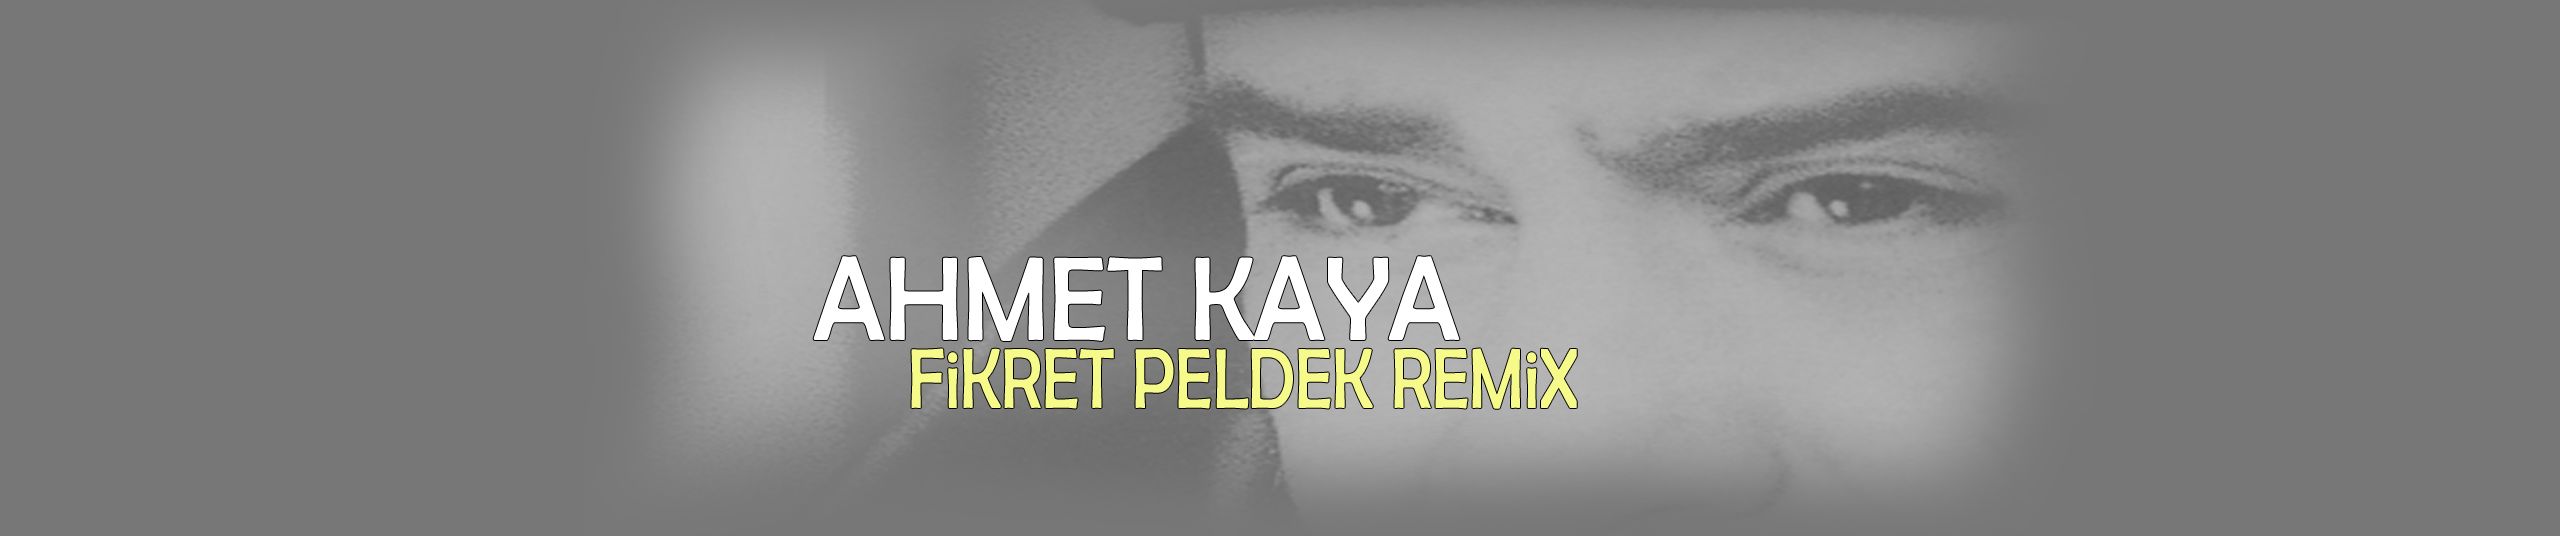 stream ahmet kaya kendine iyi bak fikret peldek remix 2018 by ahmet kaya remix listen online for free on soundcloud